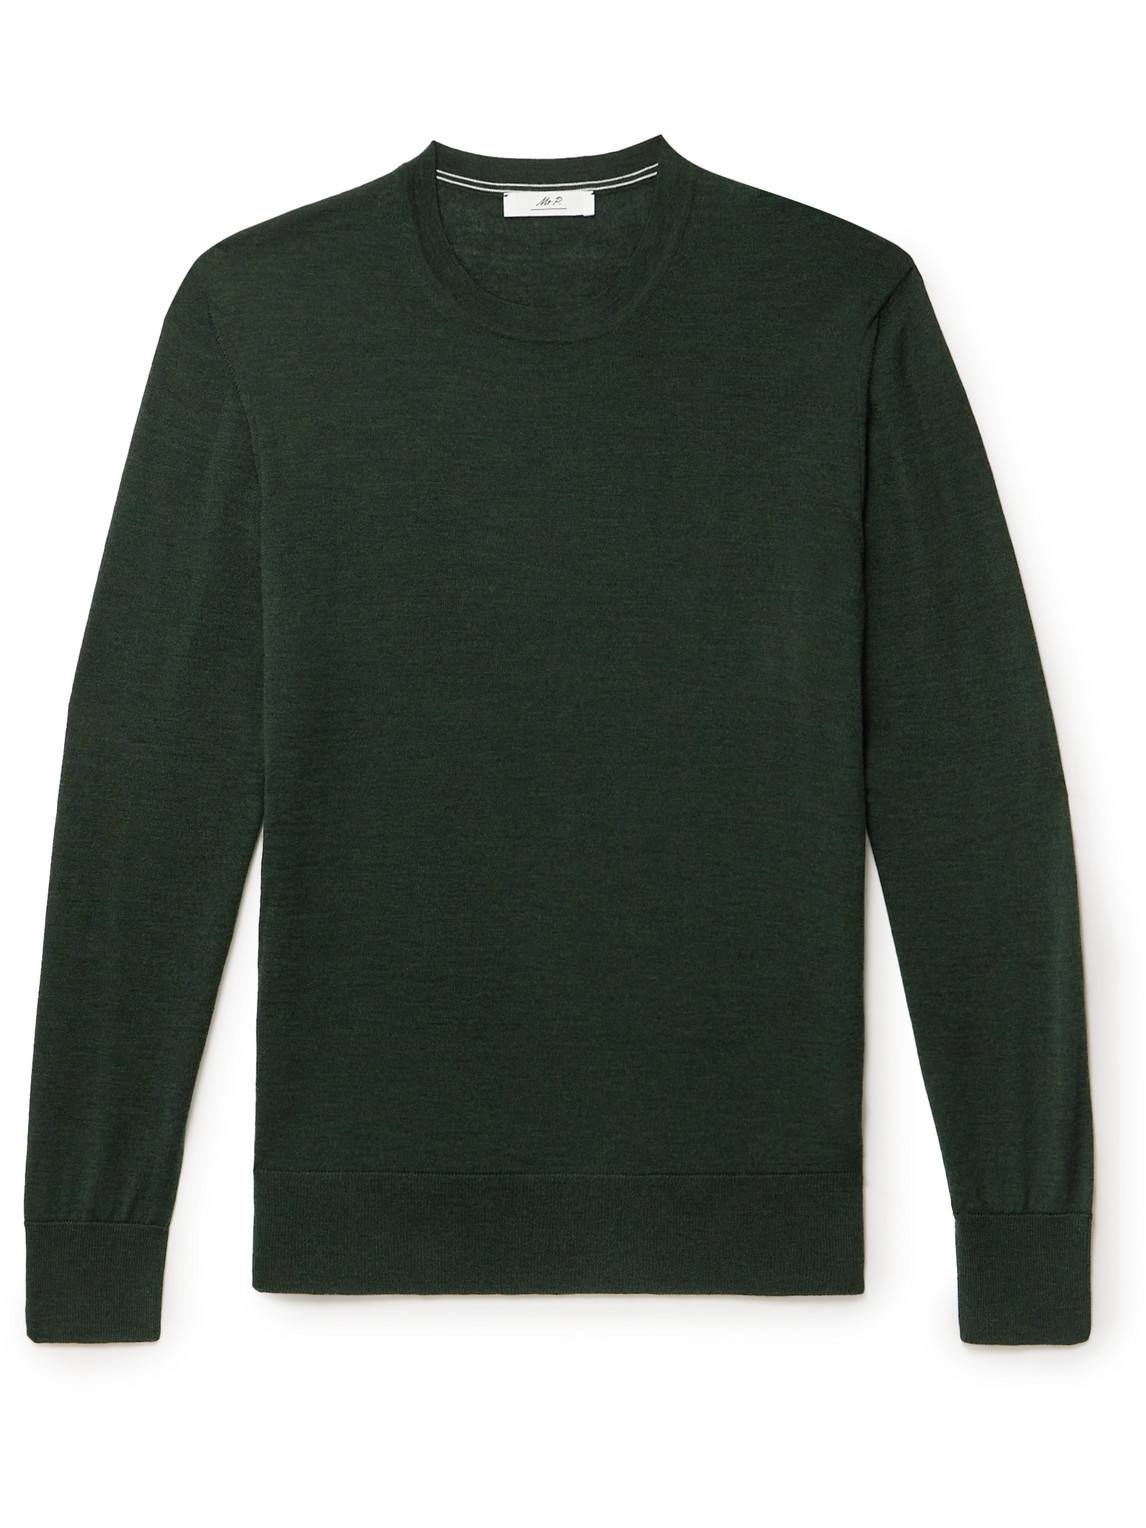 Mr P. - Slim-Fit Merino Wool Sweater - Men - Green - M von Mr P.